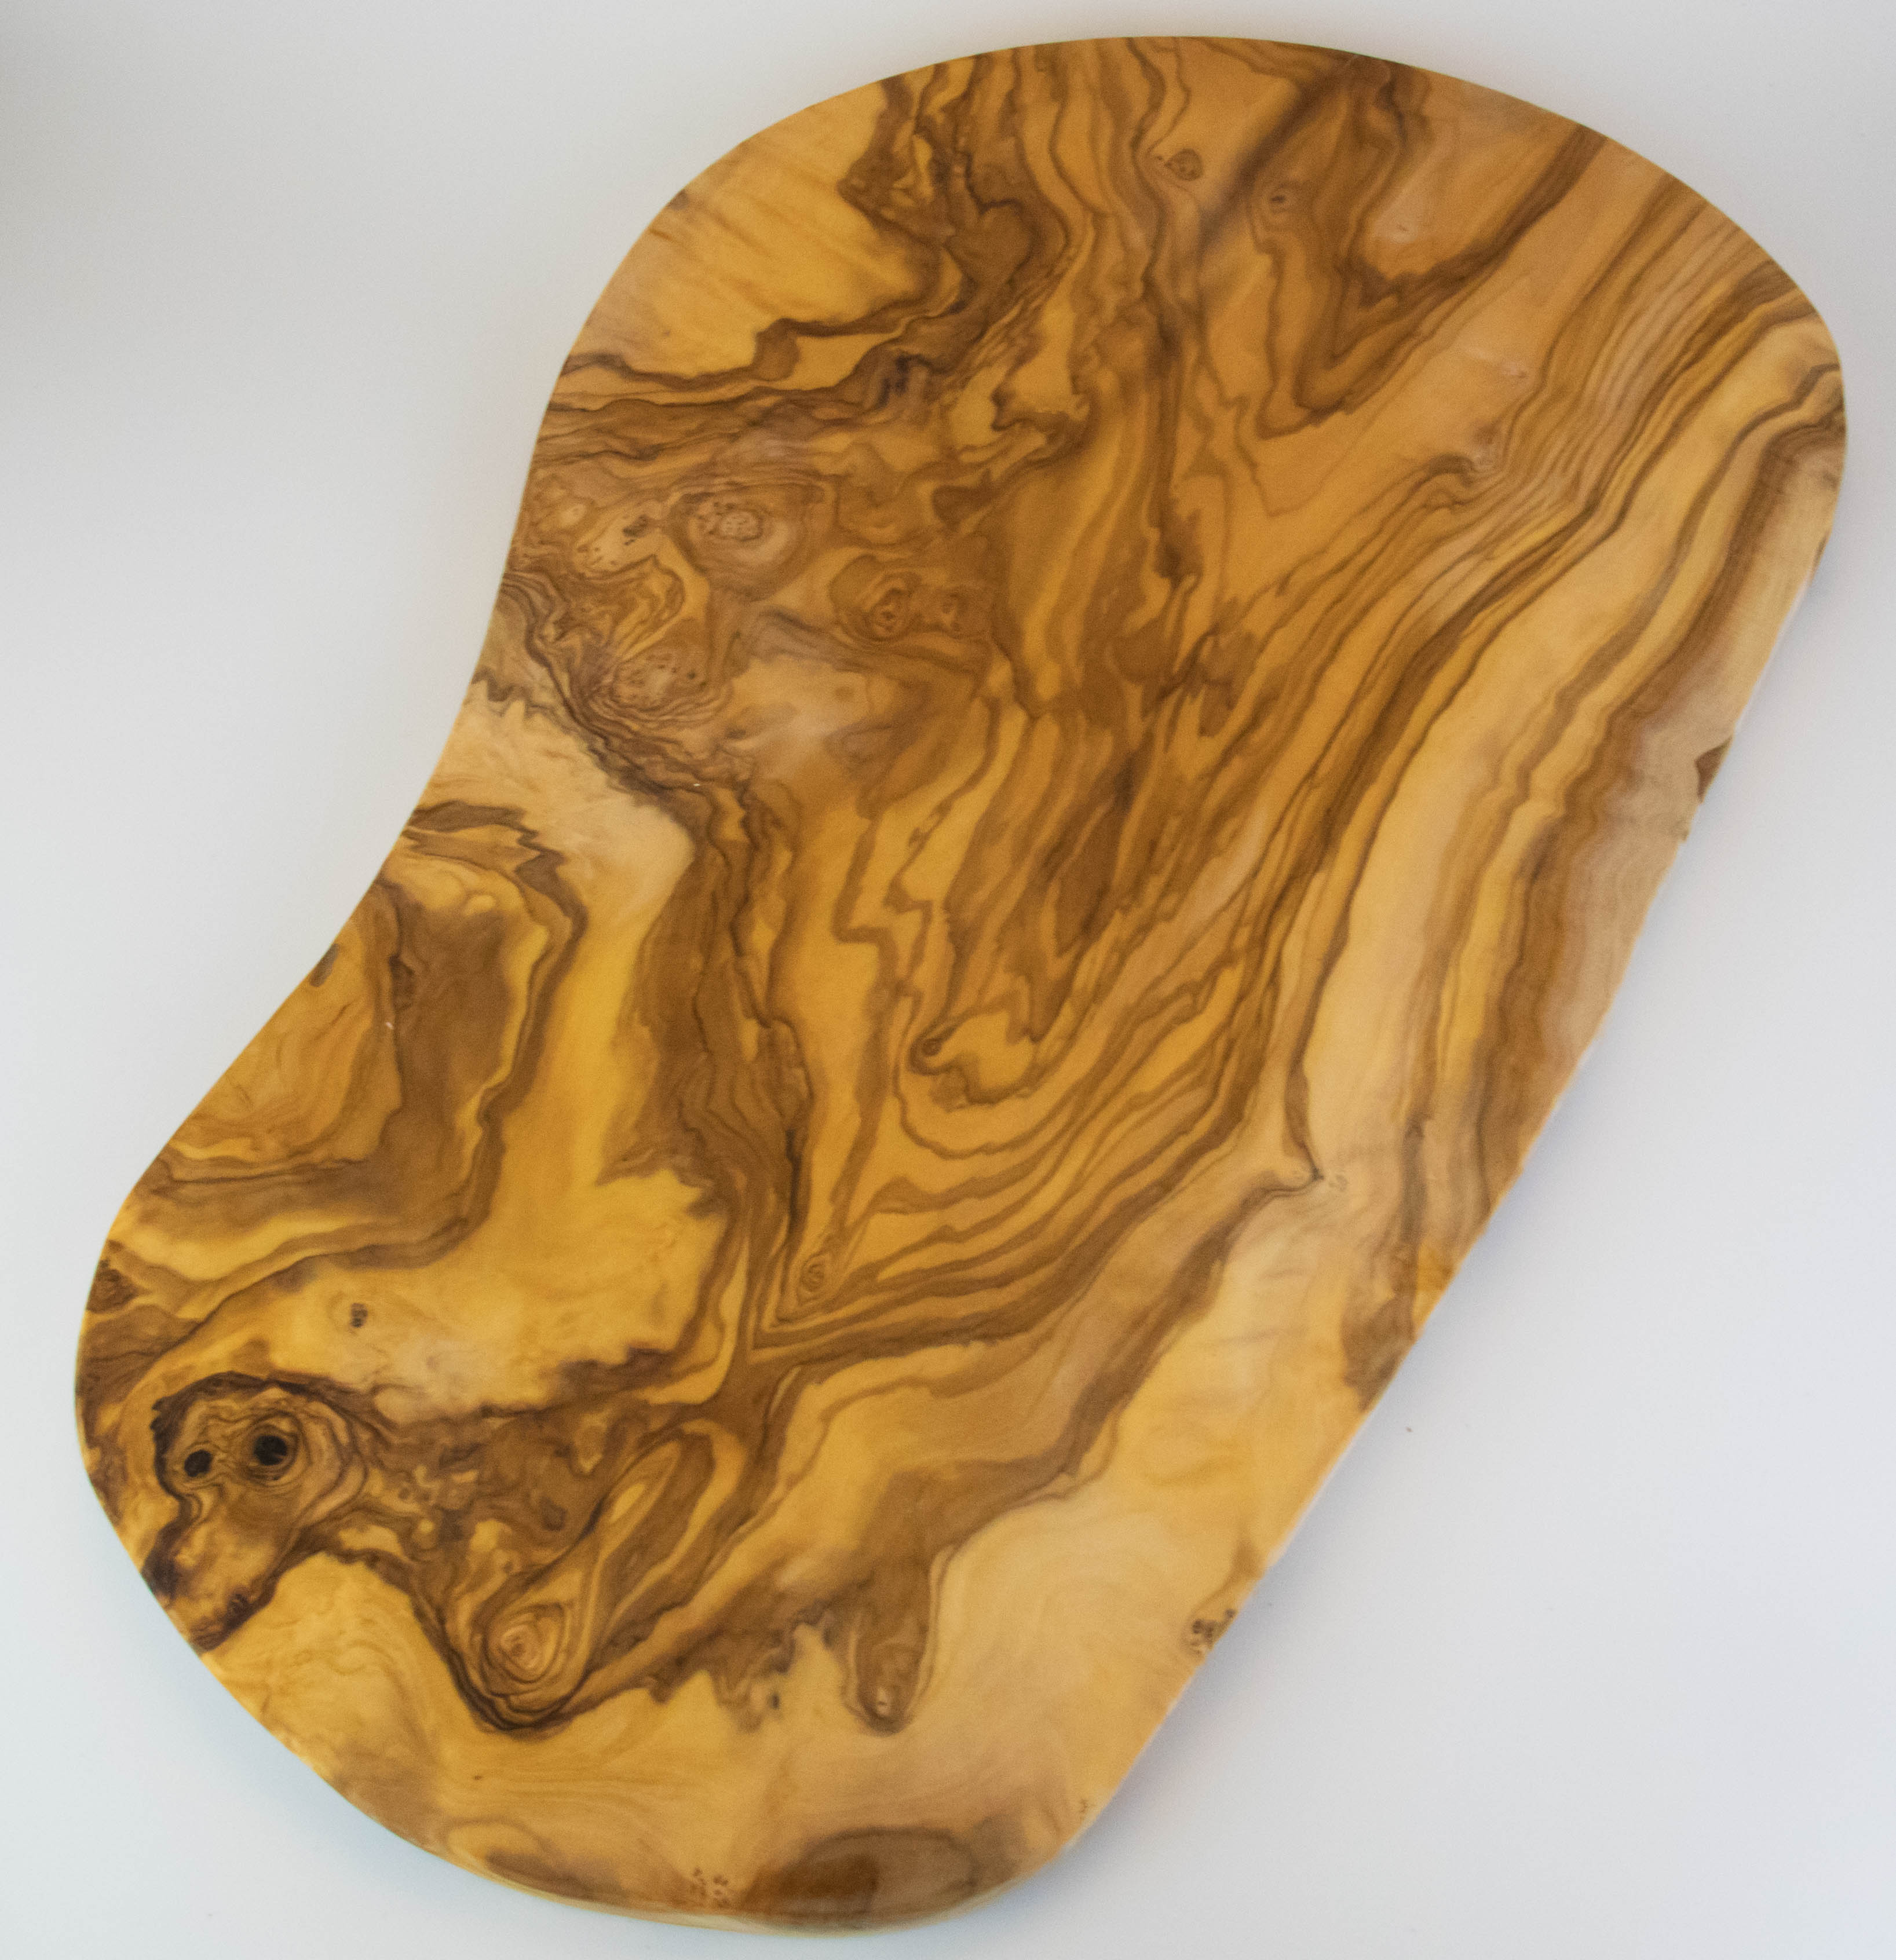 Tabla de cortar grande y rústica de madera de olivo con una longitud de 55-60 cm.